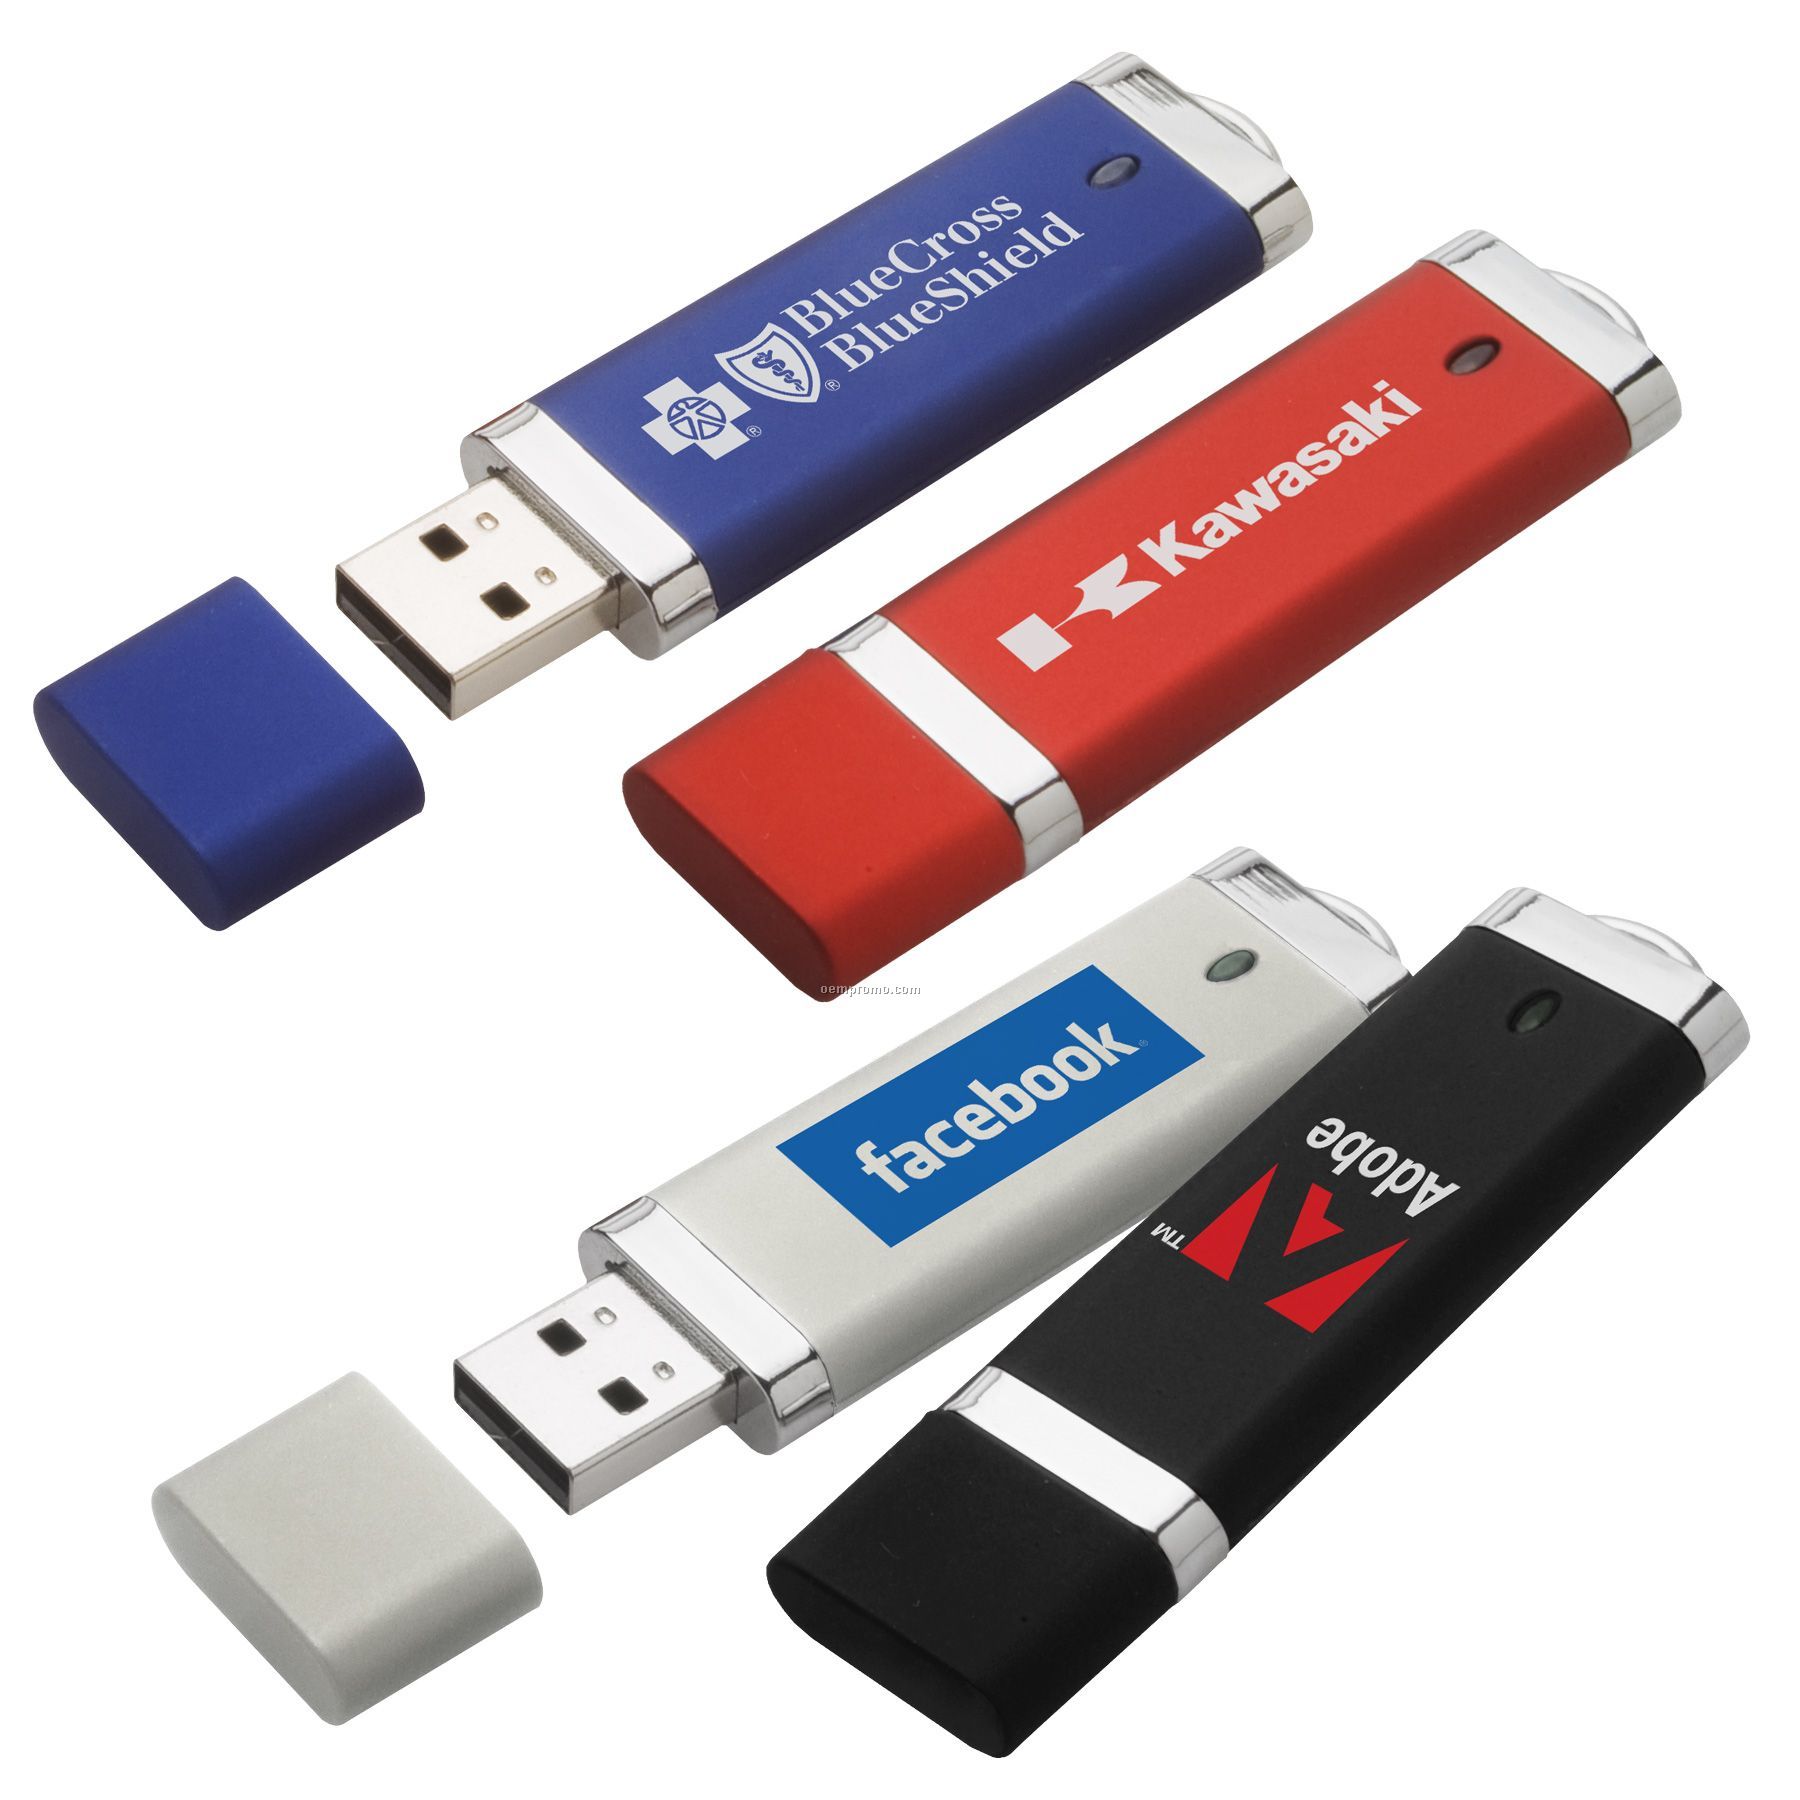 Anzi USB Flash Drive (1gb)